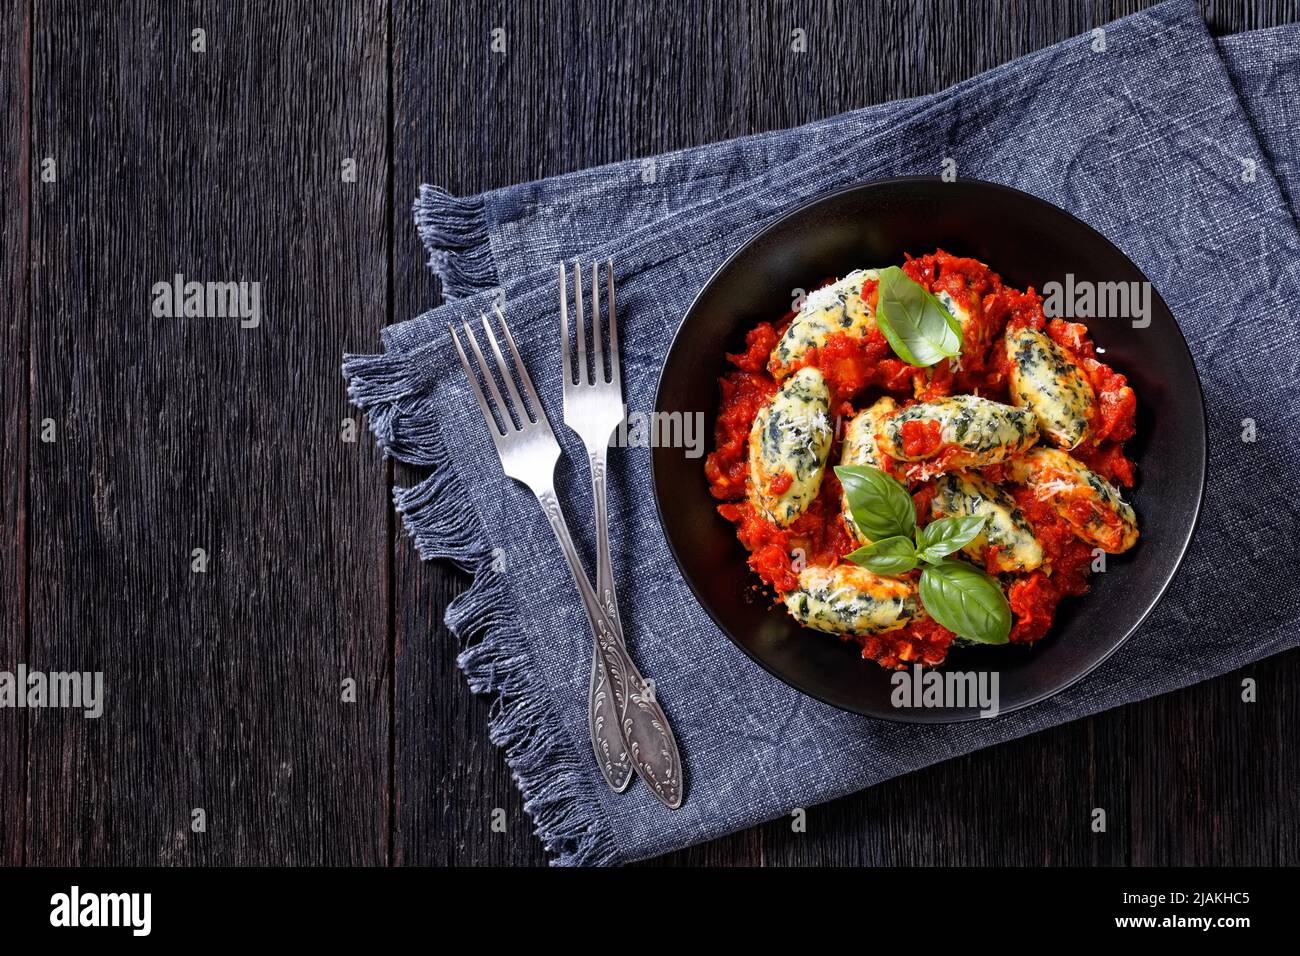 Boulettes de ricotta aux épinards italiens, sauce tomate aux herbes et parmesan râpé dans un bol noir sur une table en bois sombre avec des fourchettes, plates Banque D'Images